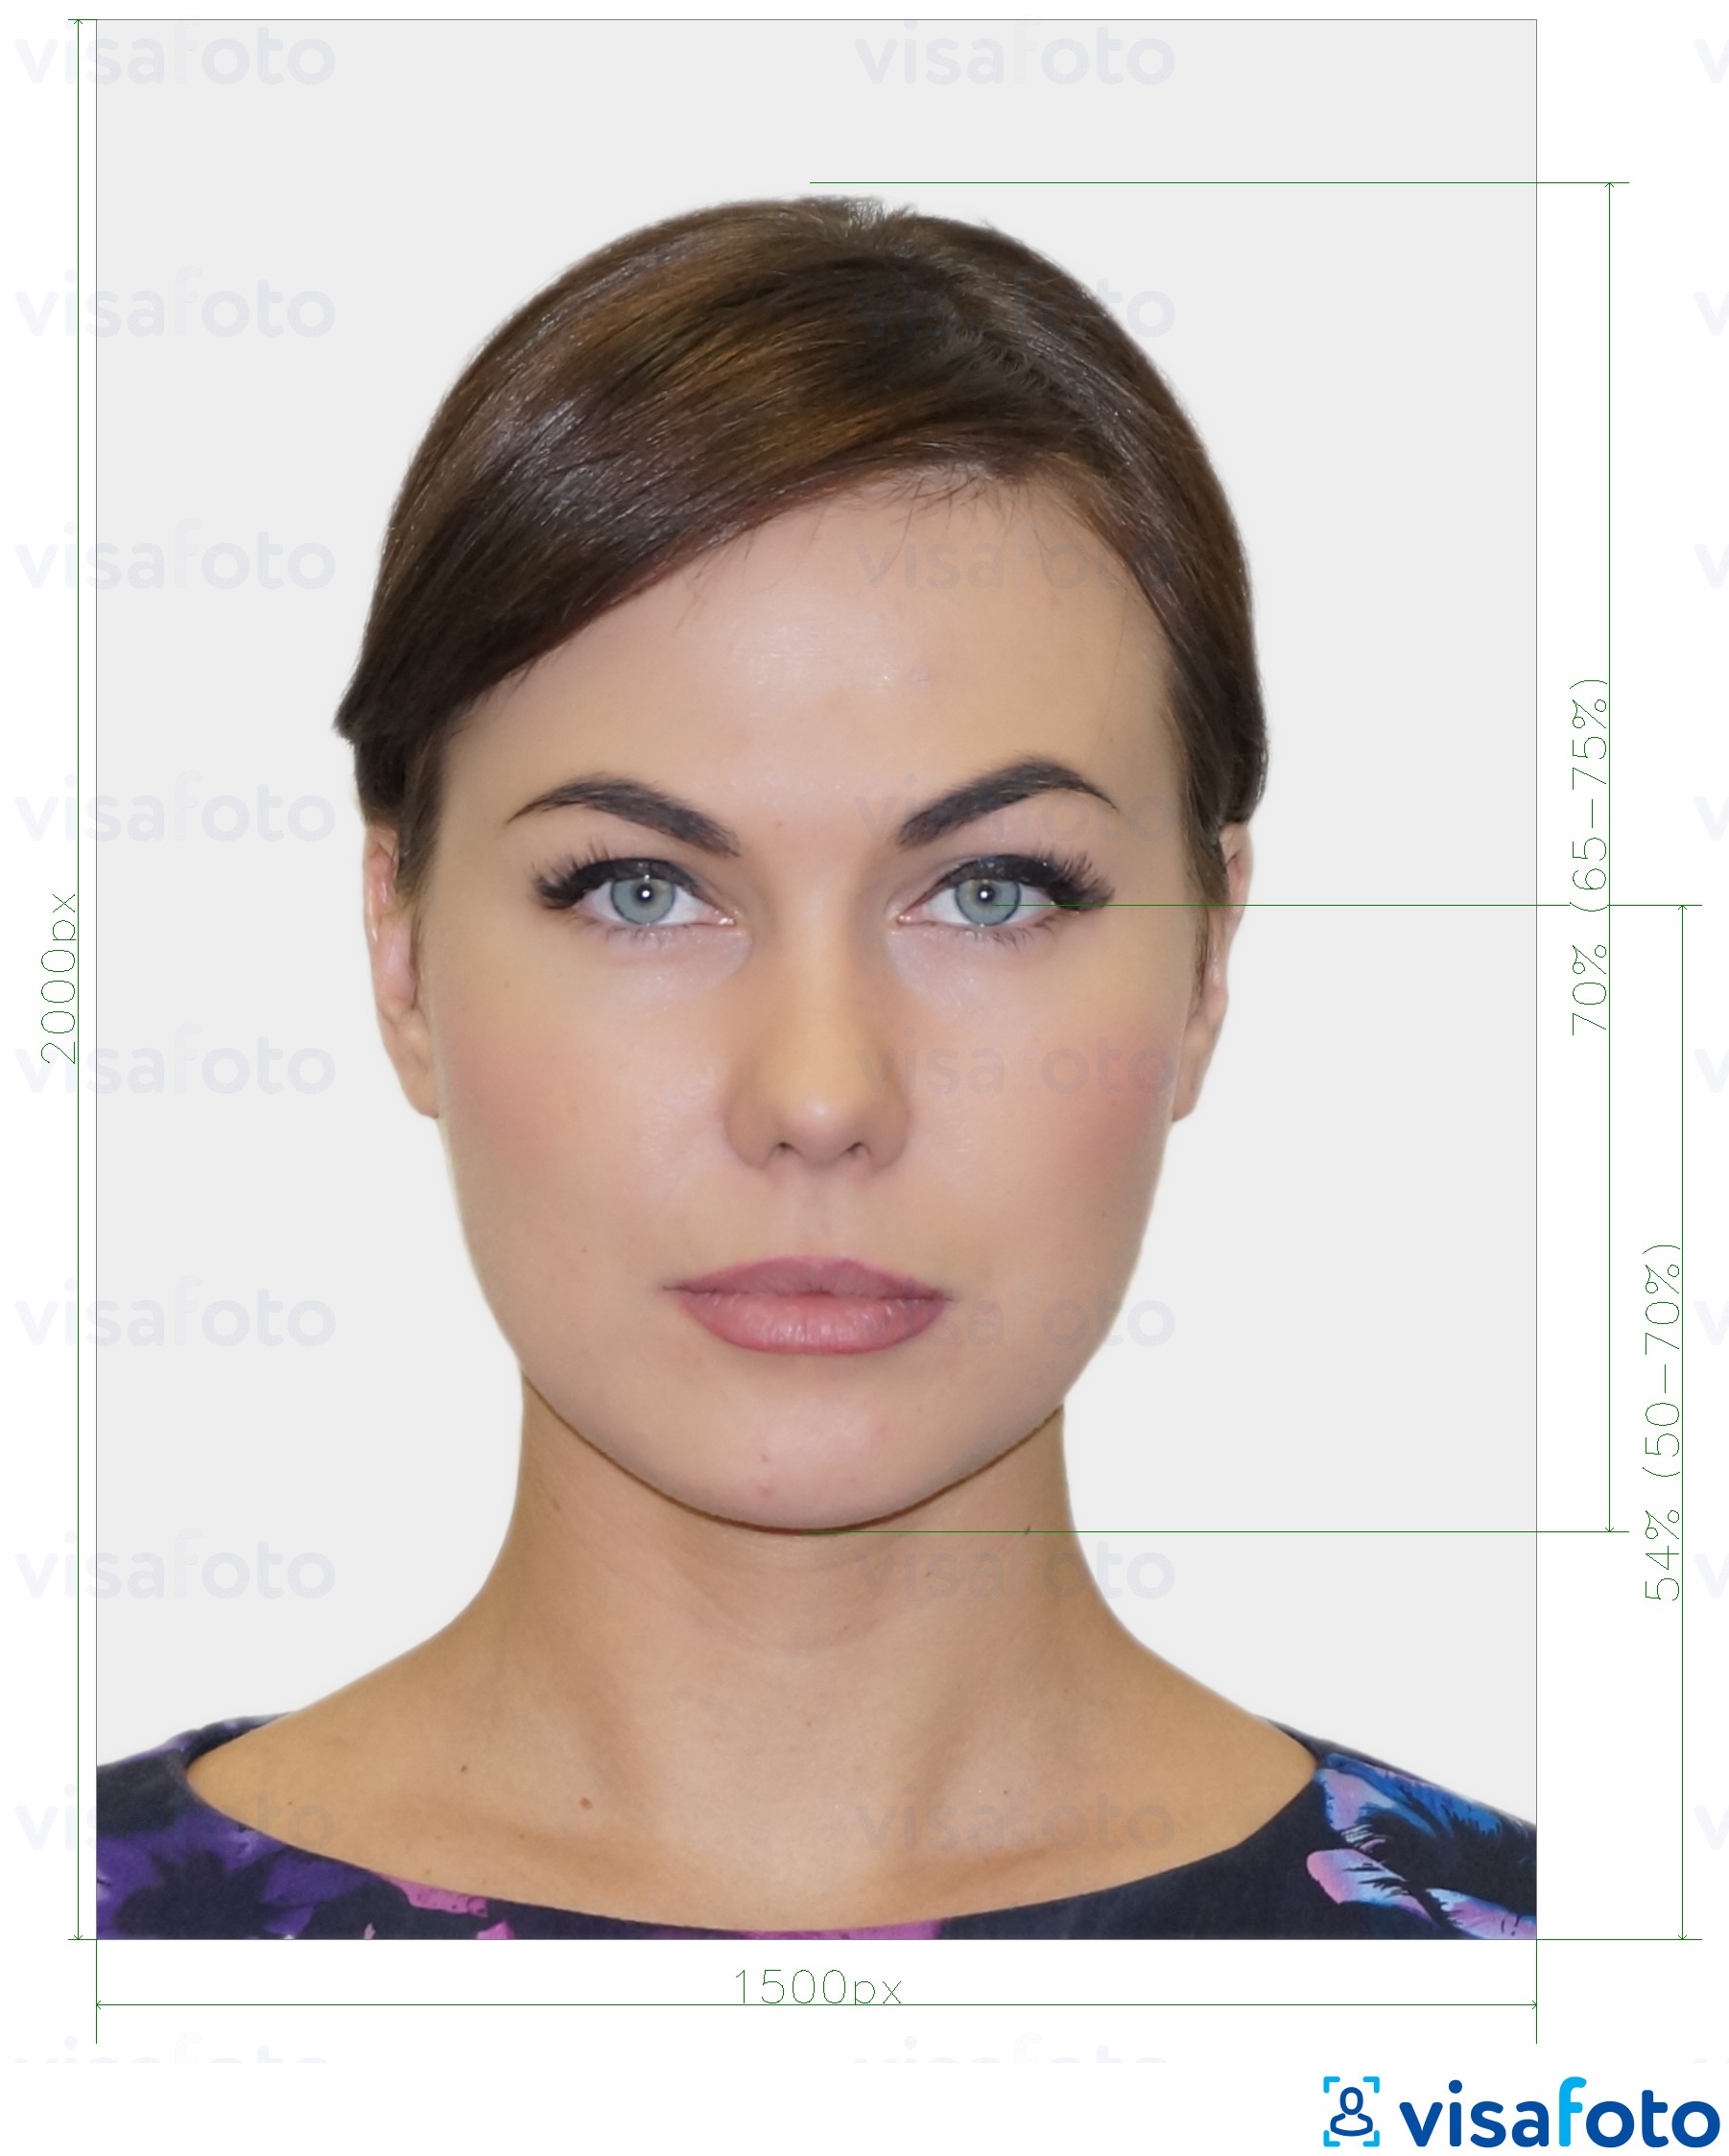 Ejemplo de foto para Pasaporte de Nueva Zelanda en línea con la especificación del tamaño exacto